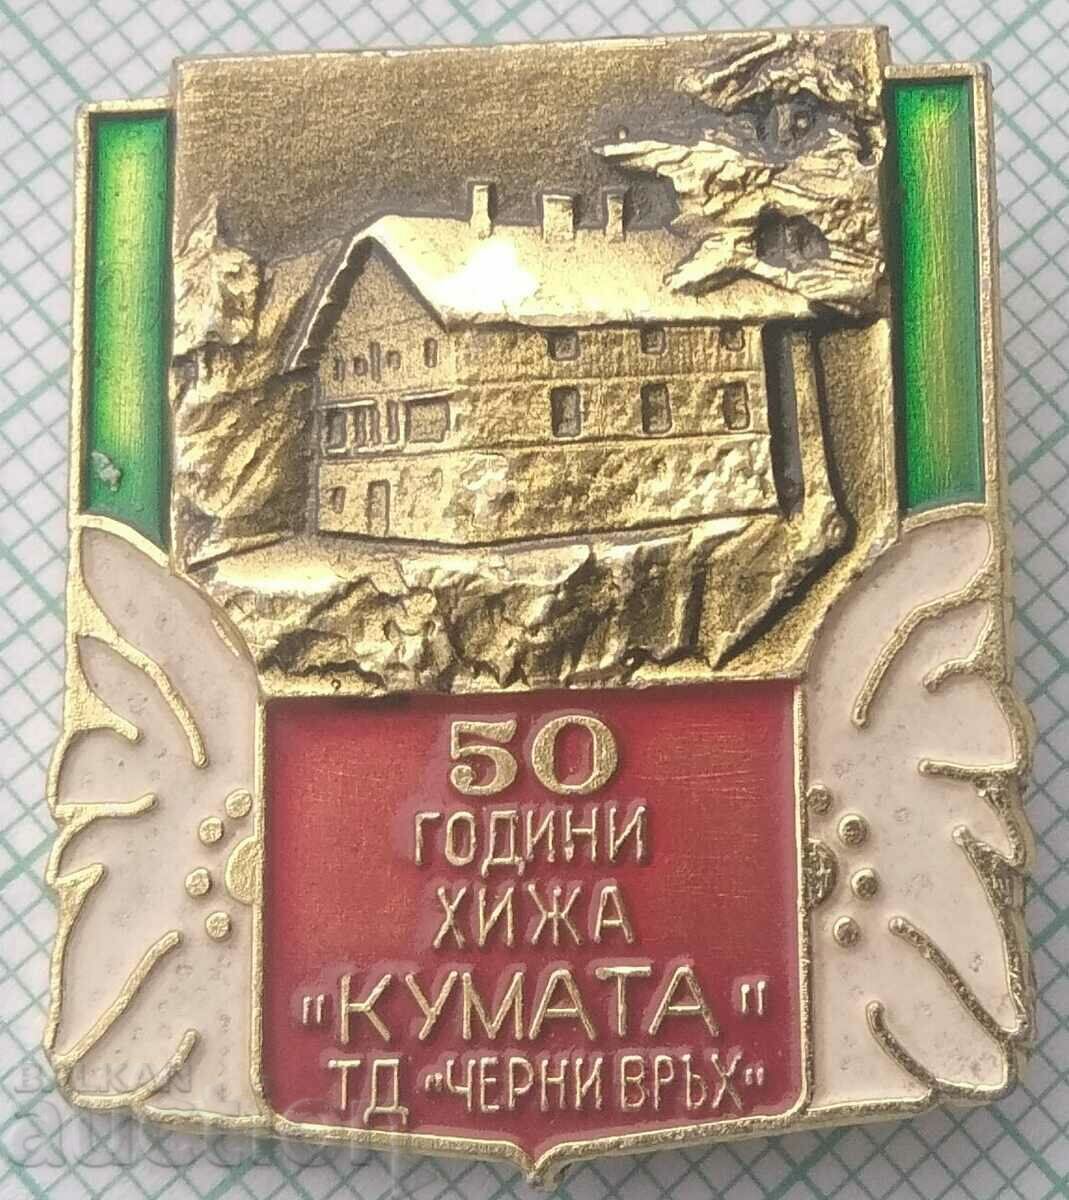 15040 Туристическо дружество Черни Връх - 50г хижа Кумата